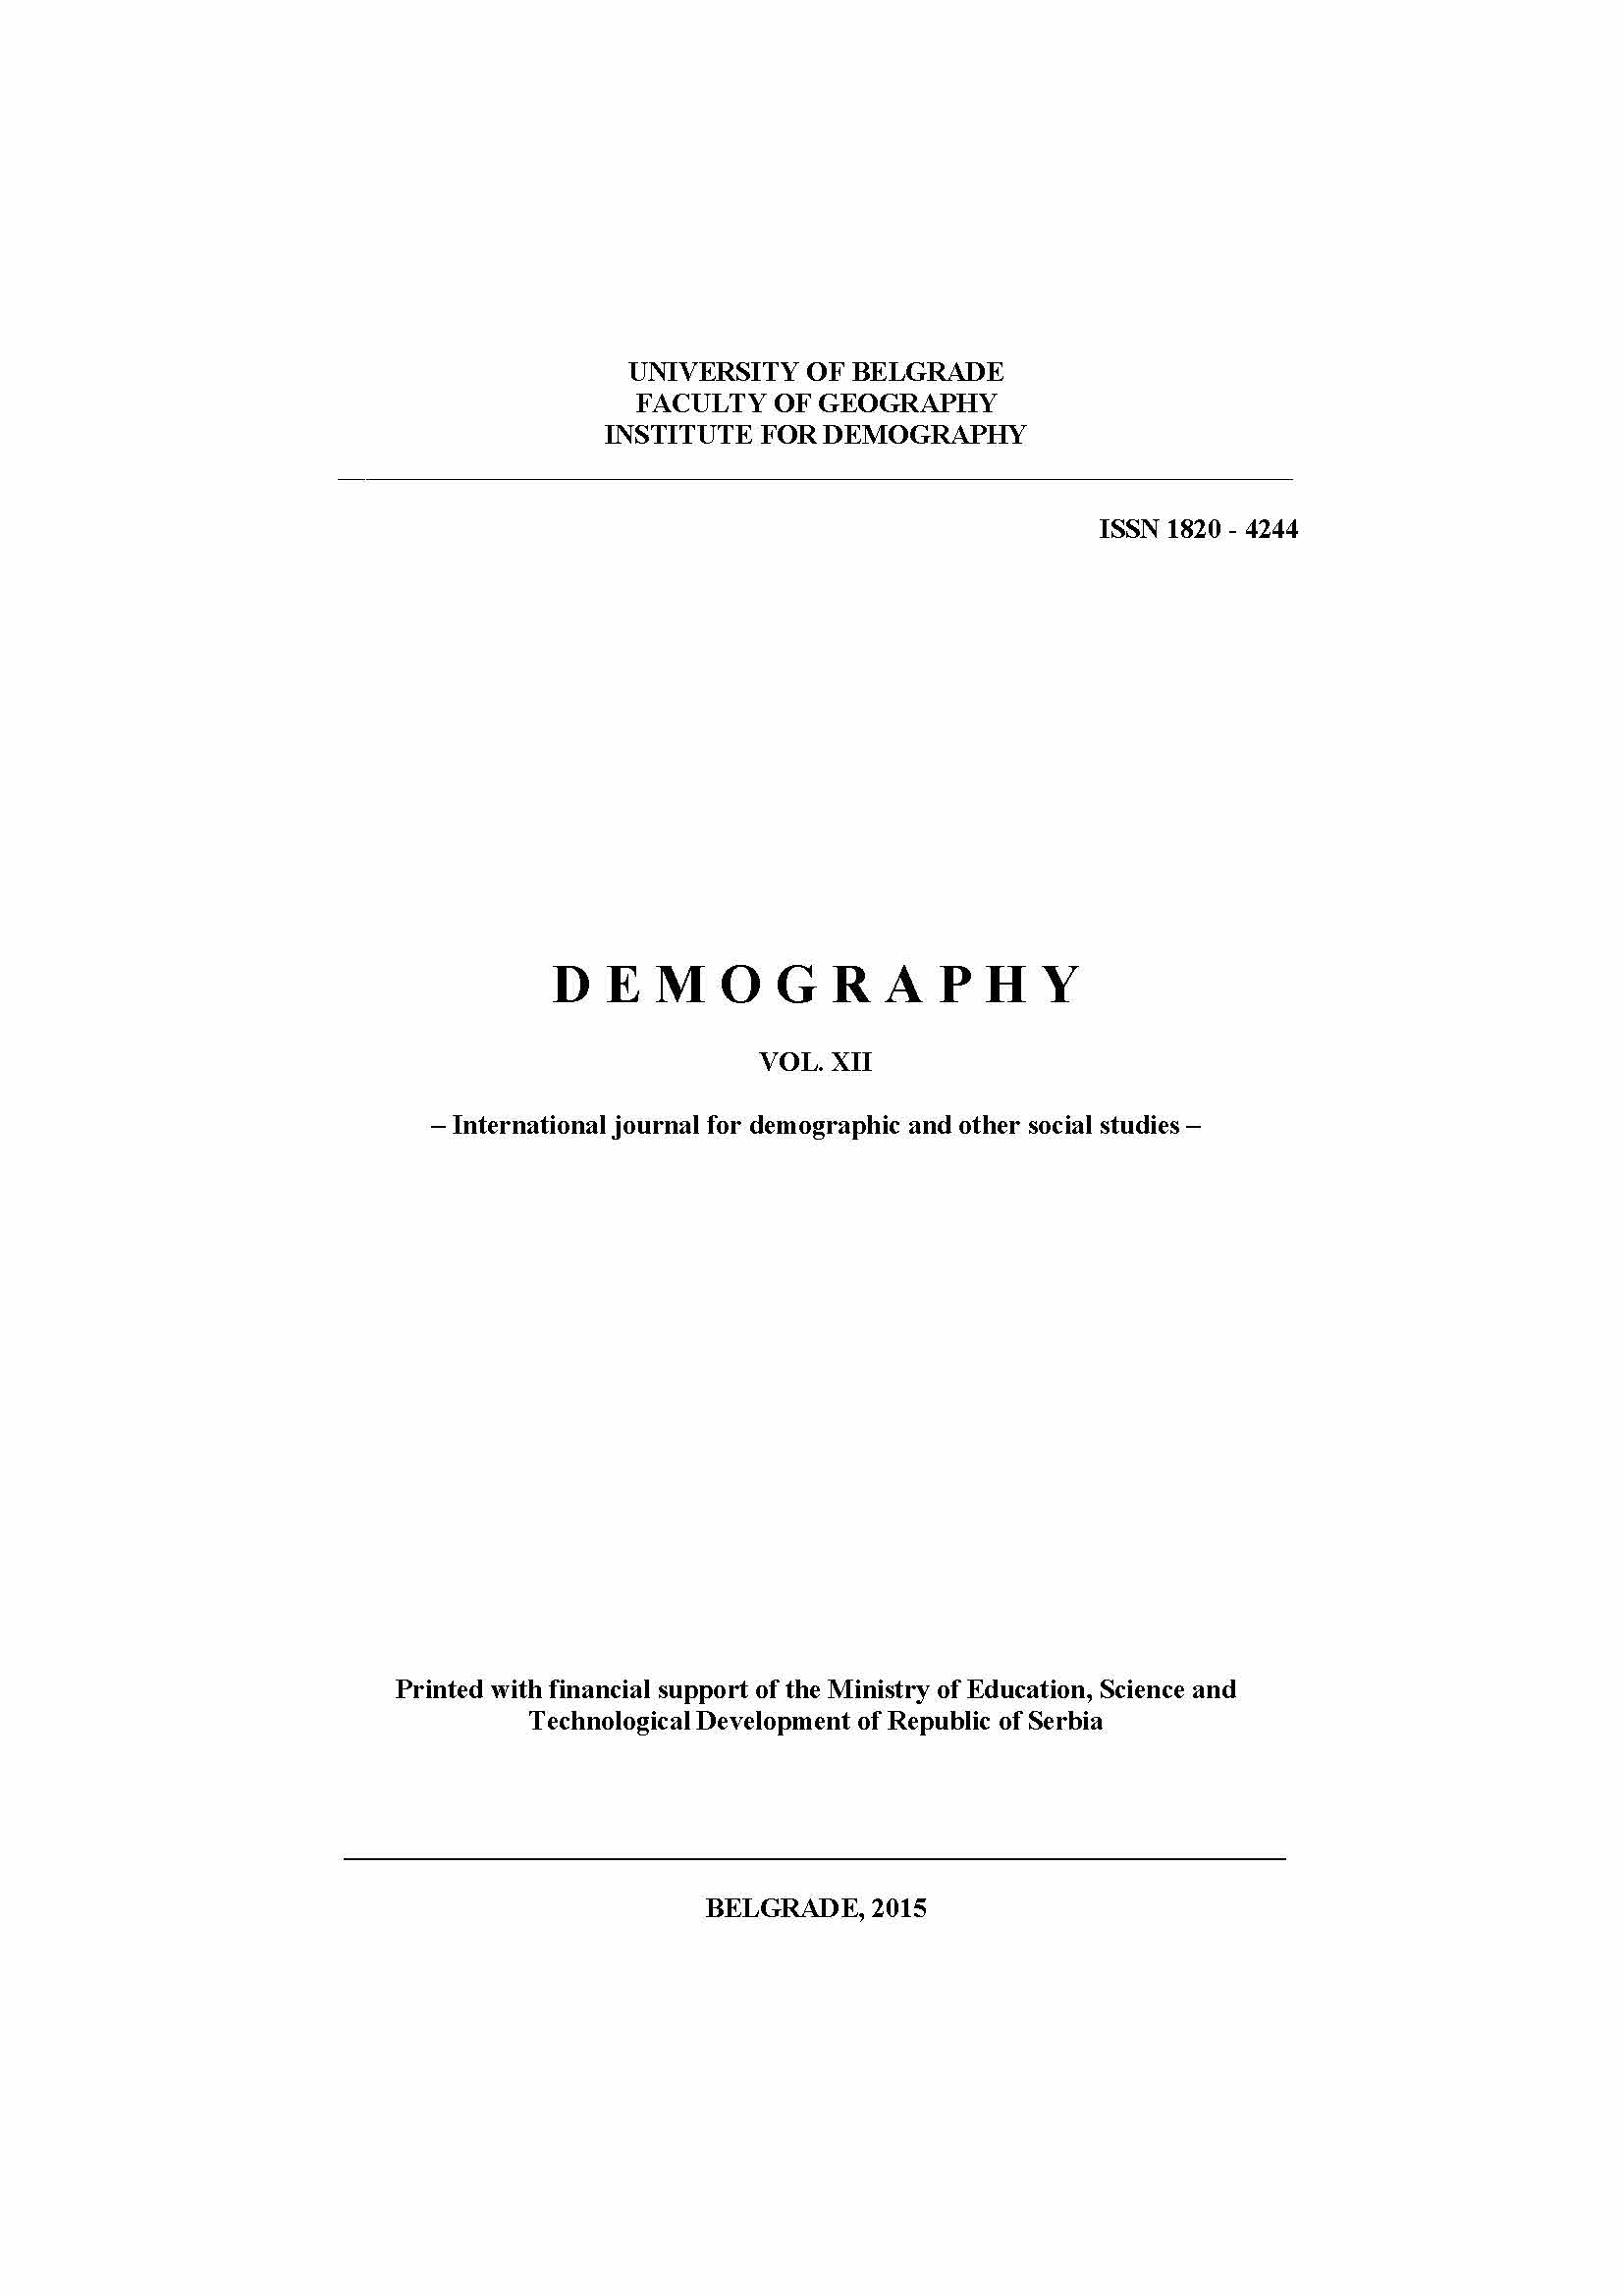 Гносеолошки модел класичне антропогеографије као општегеографске науке према концепцији Војислава С. Радовановића